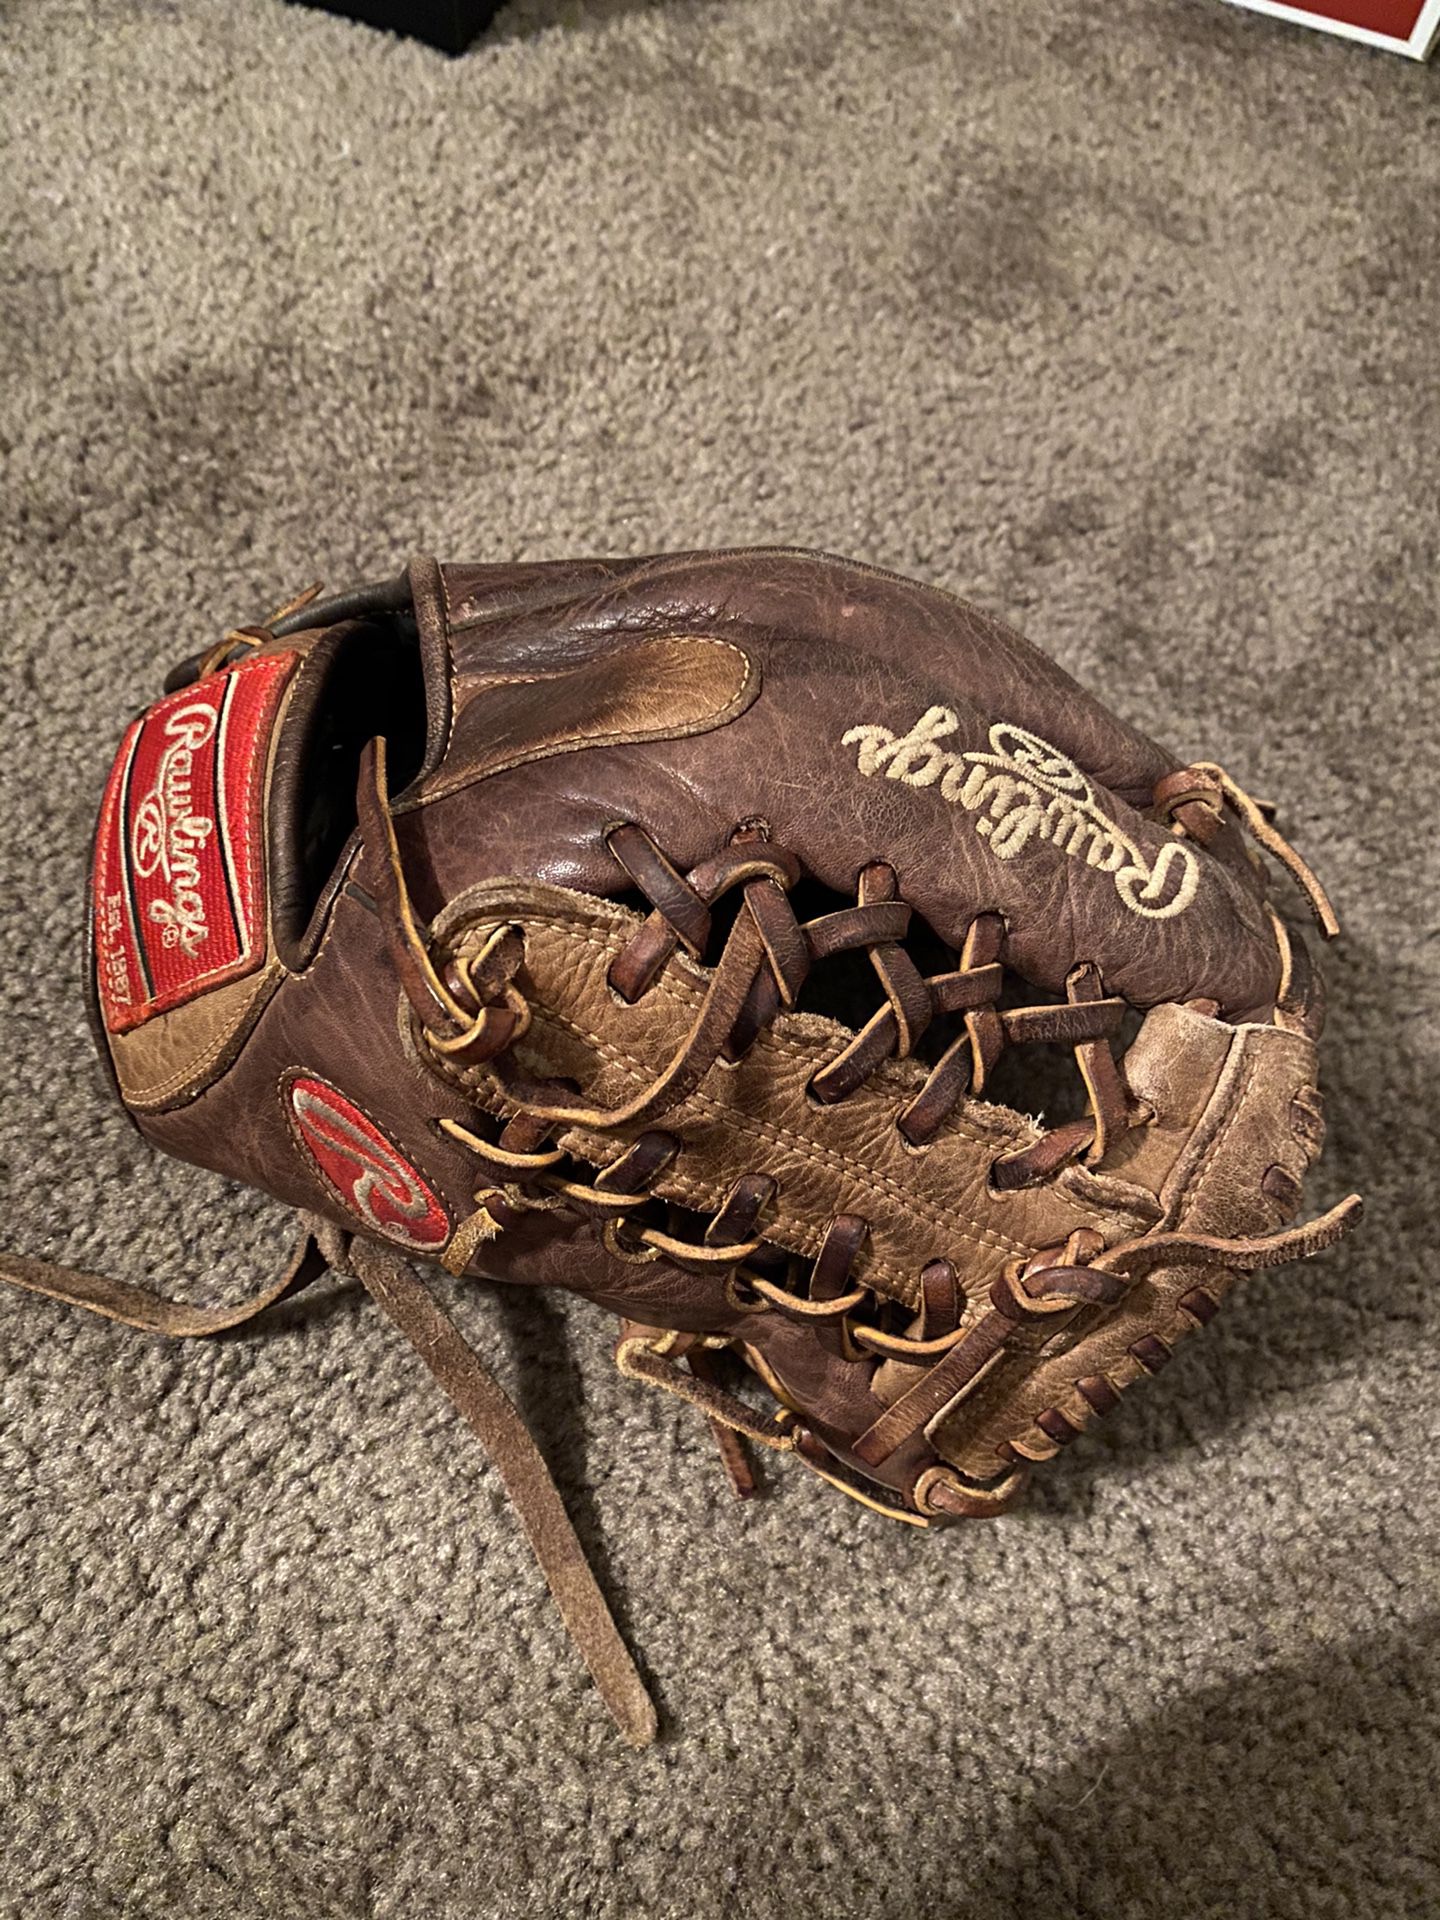 Rawlings Pro Series Baseball Glove